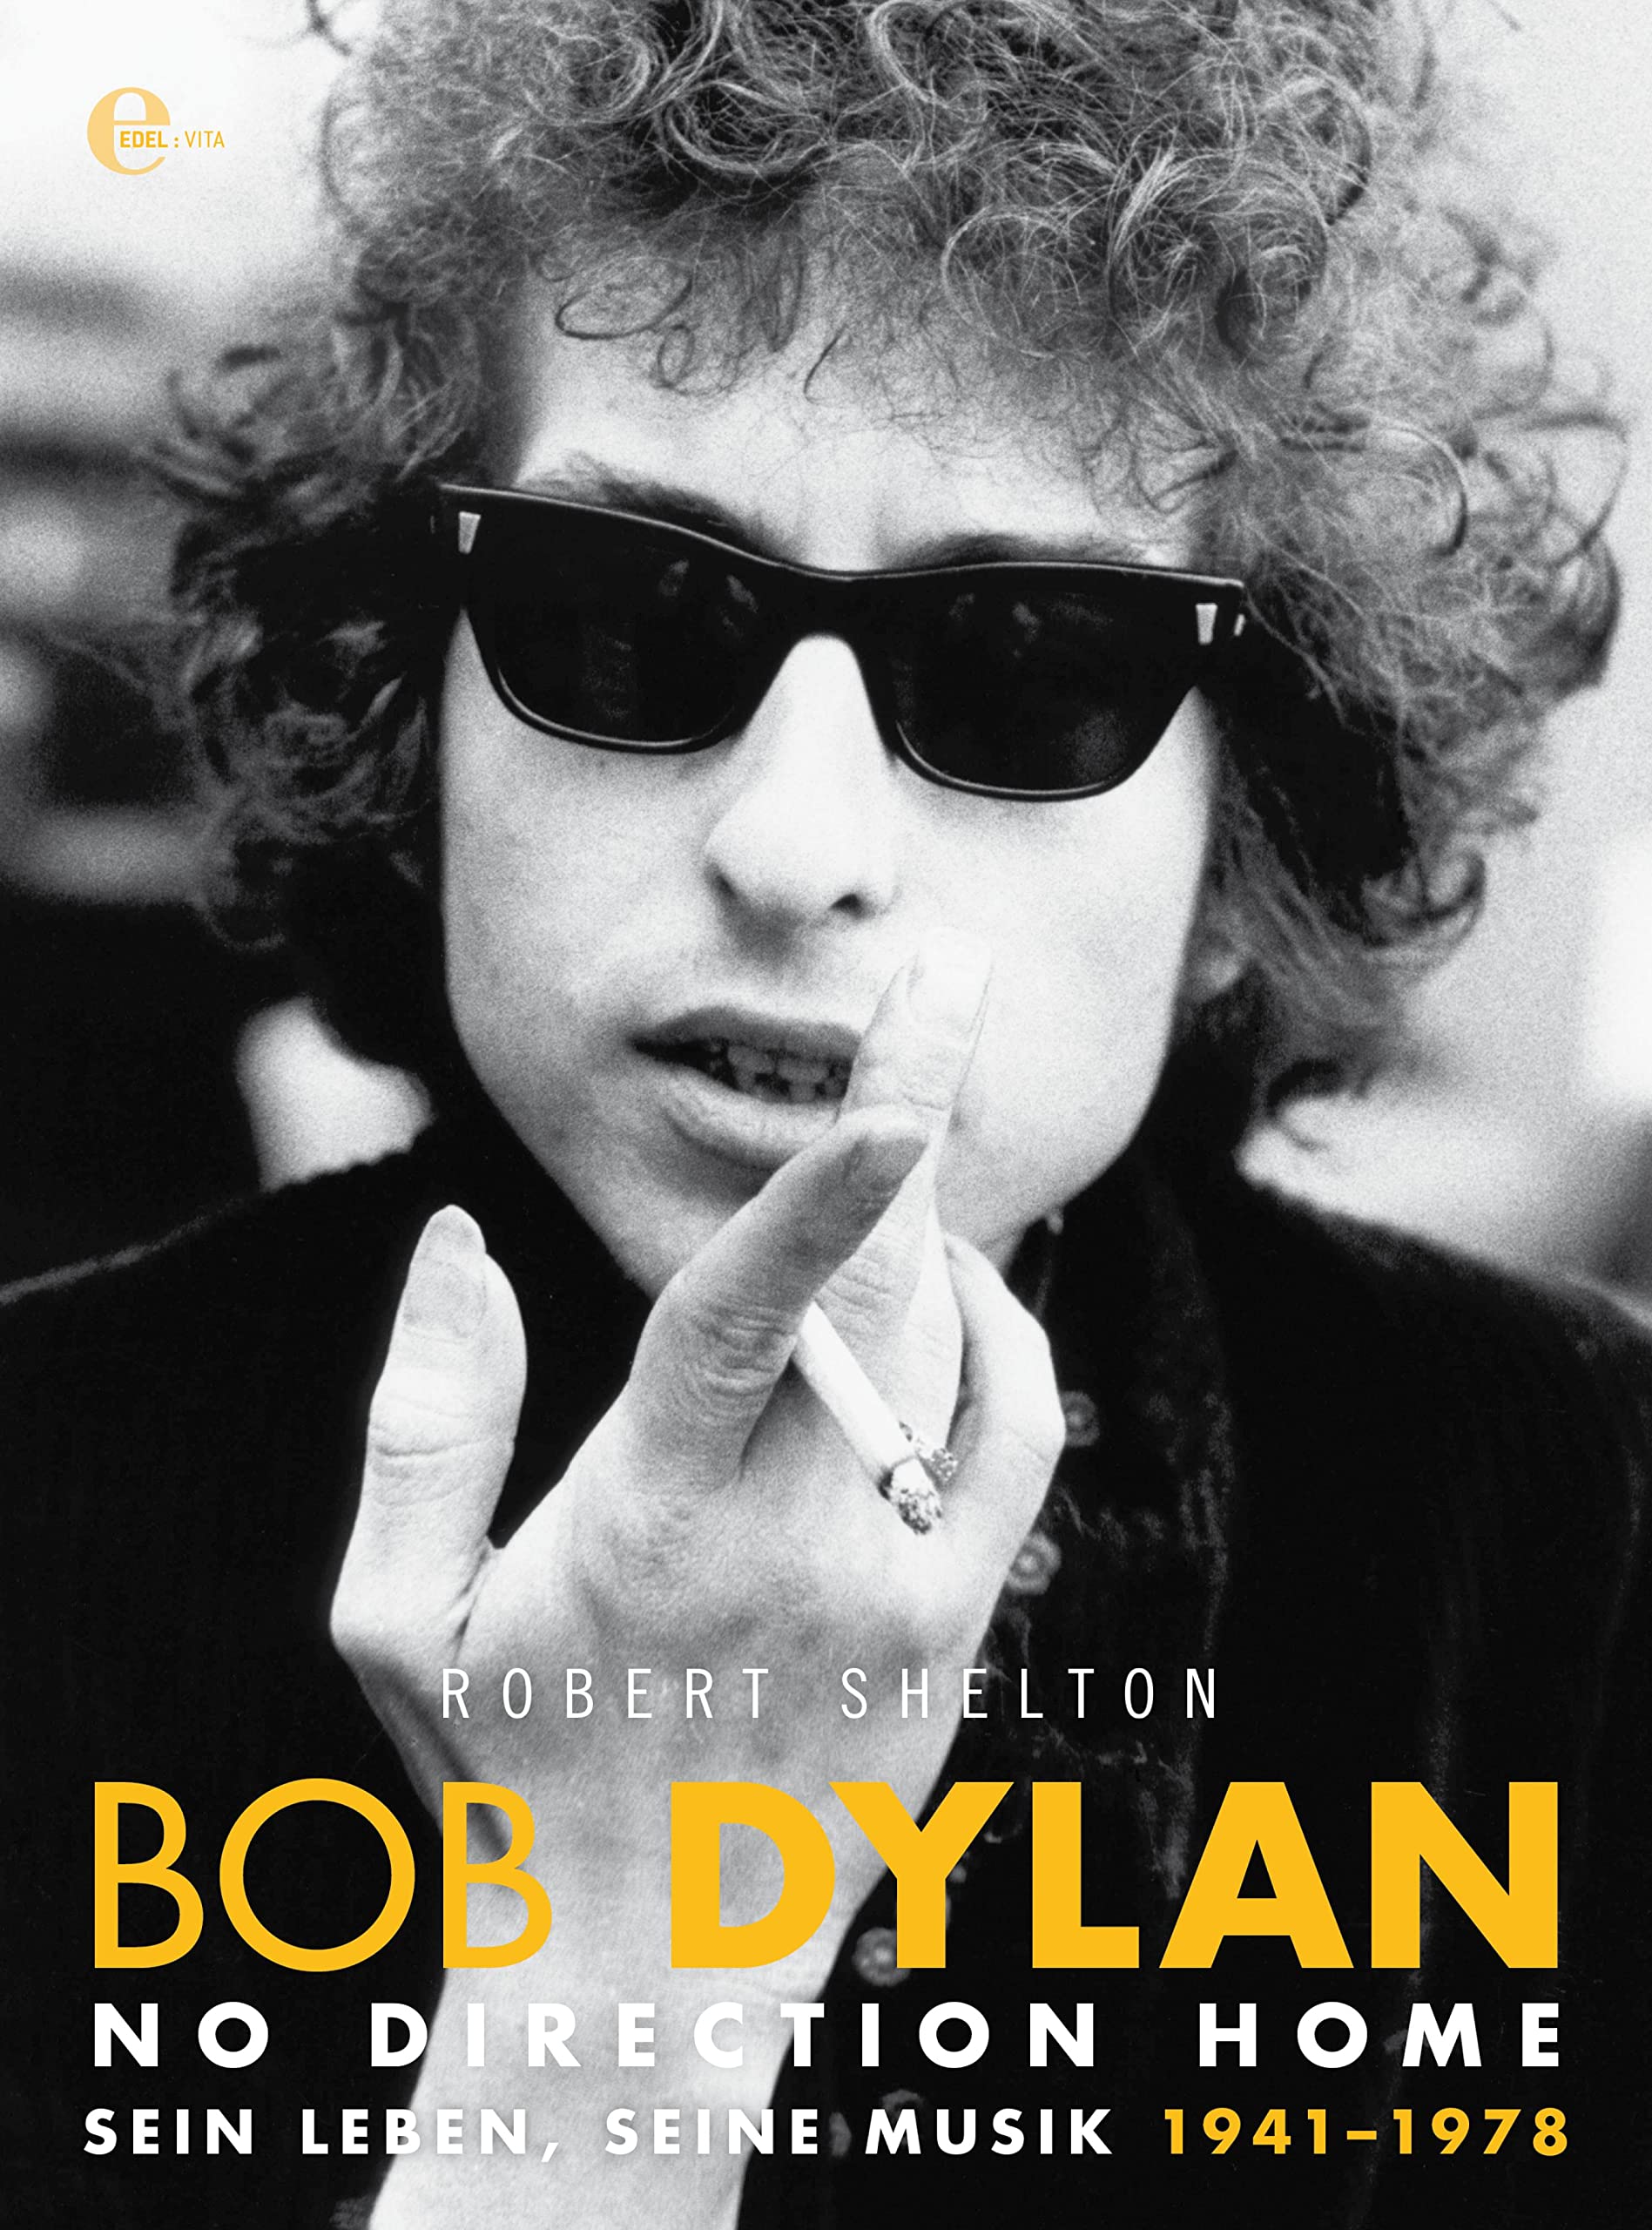 Bob Dylan - No Direction Home: Sein Leben, seine Musik 1941-1978 (Buchreihe 1) (German Edition)